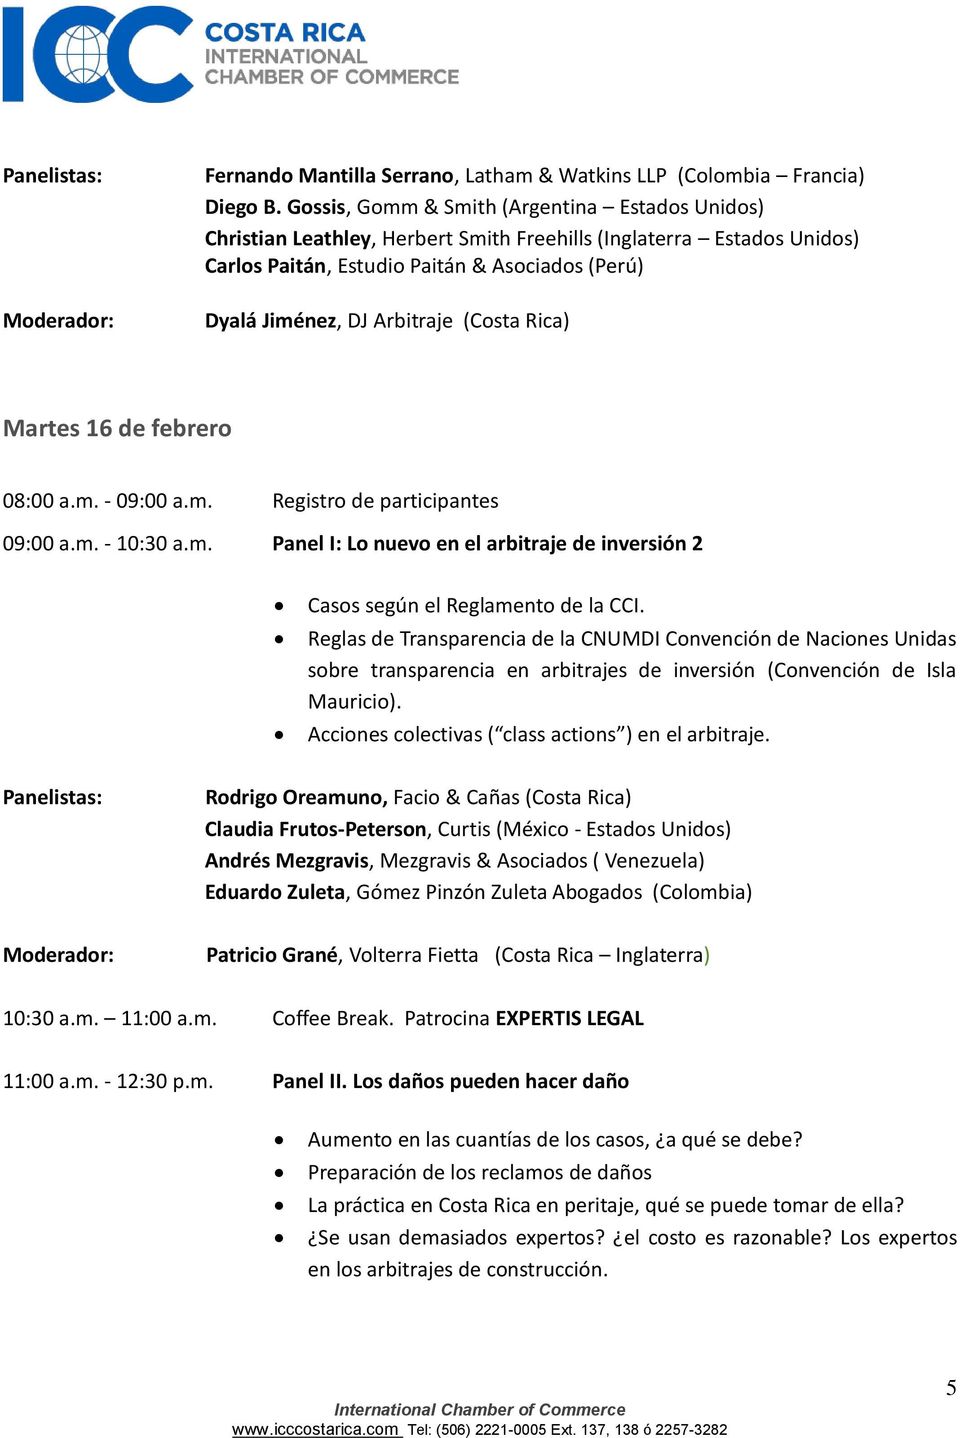 (Costa Rica) Martes 16 de febrero 08:00 a.m. - 09:00 a.m. Registro de participantes 09:00 a.m. - 10:30 a.m. Panel I: Lo nuevo en el arbitraje de inversión 2 Casos según el Reglamento de la CCI.